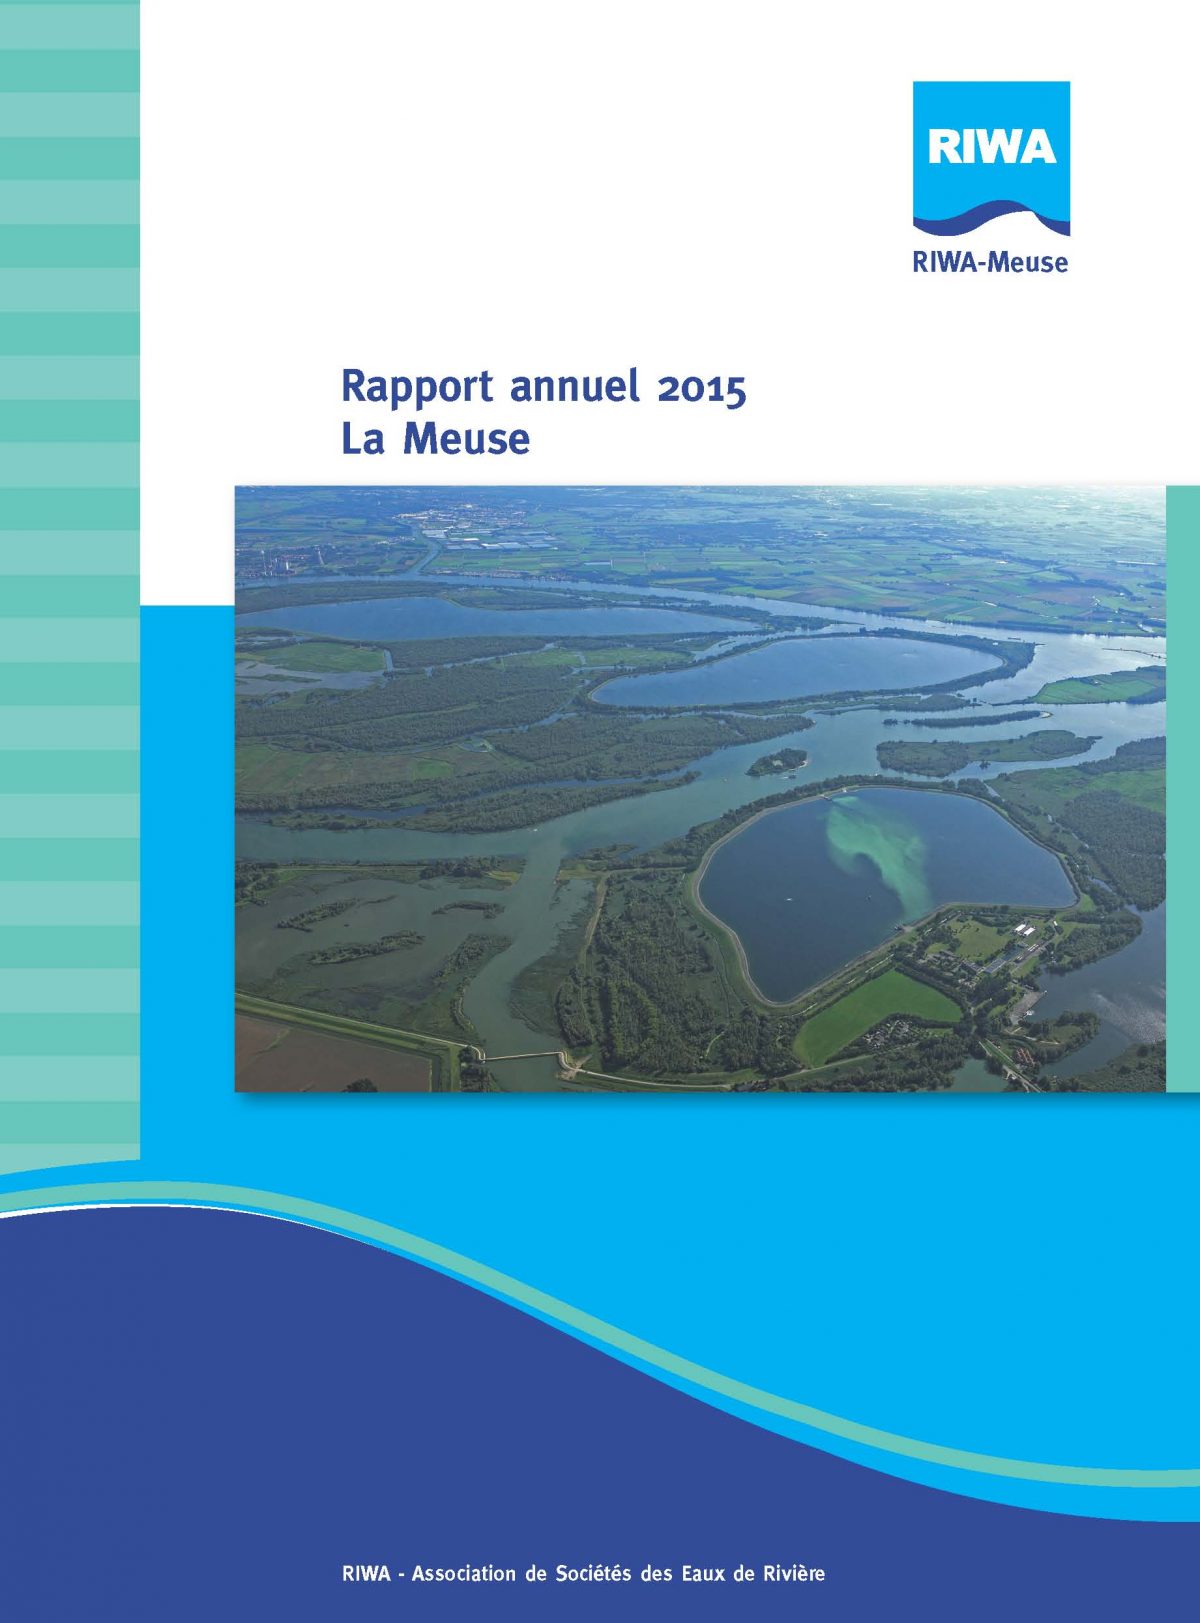 RIWA Rapport Annuel 2015 La Meuse